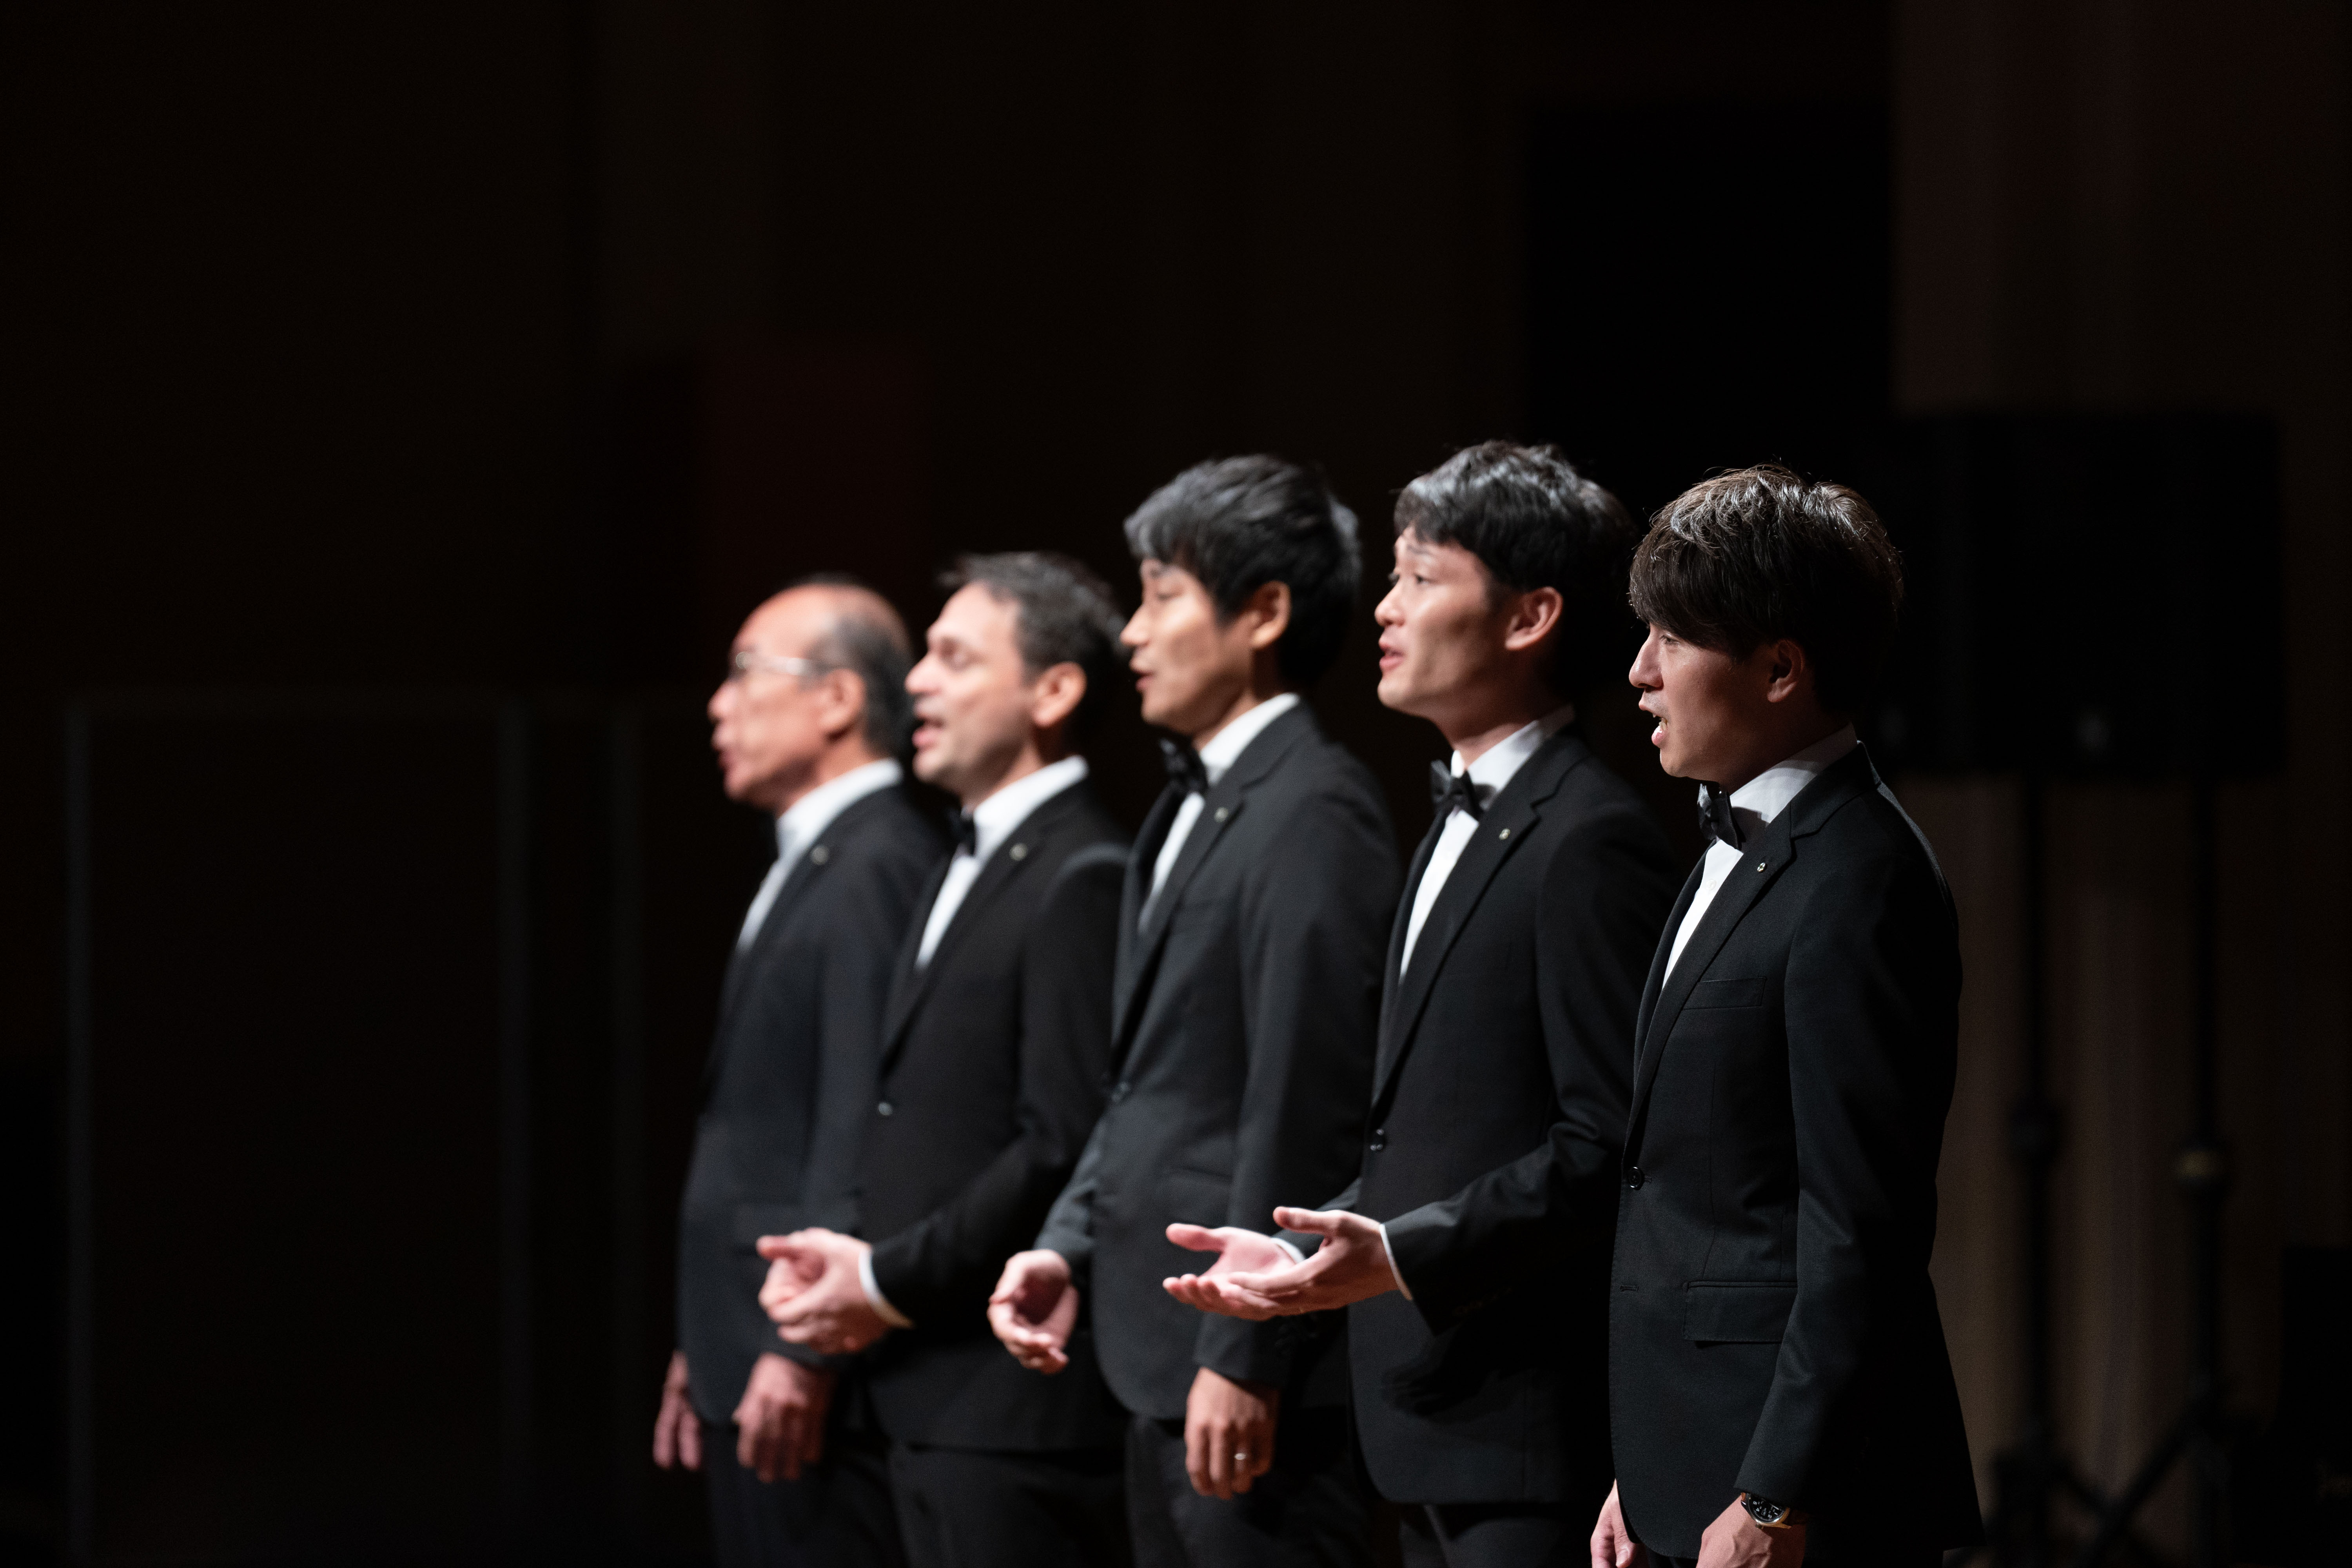 世界メシア教のコーラスグループ「コーラス・メシア」が
「コーラス・メシア チャリティーコンサート2023 in Osaka」を
開催